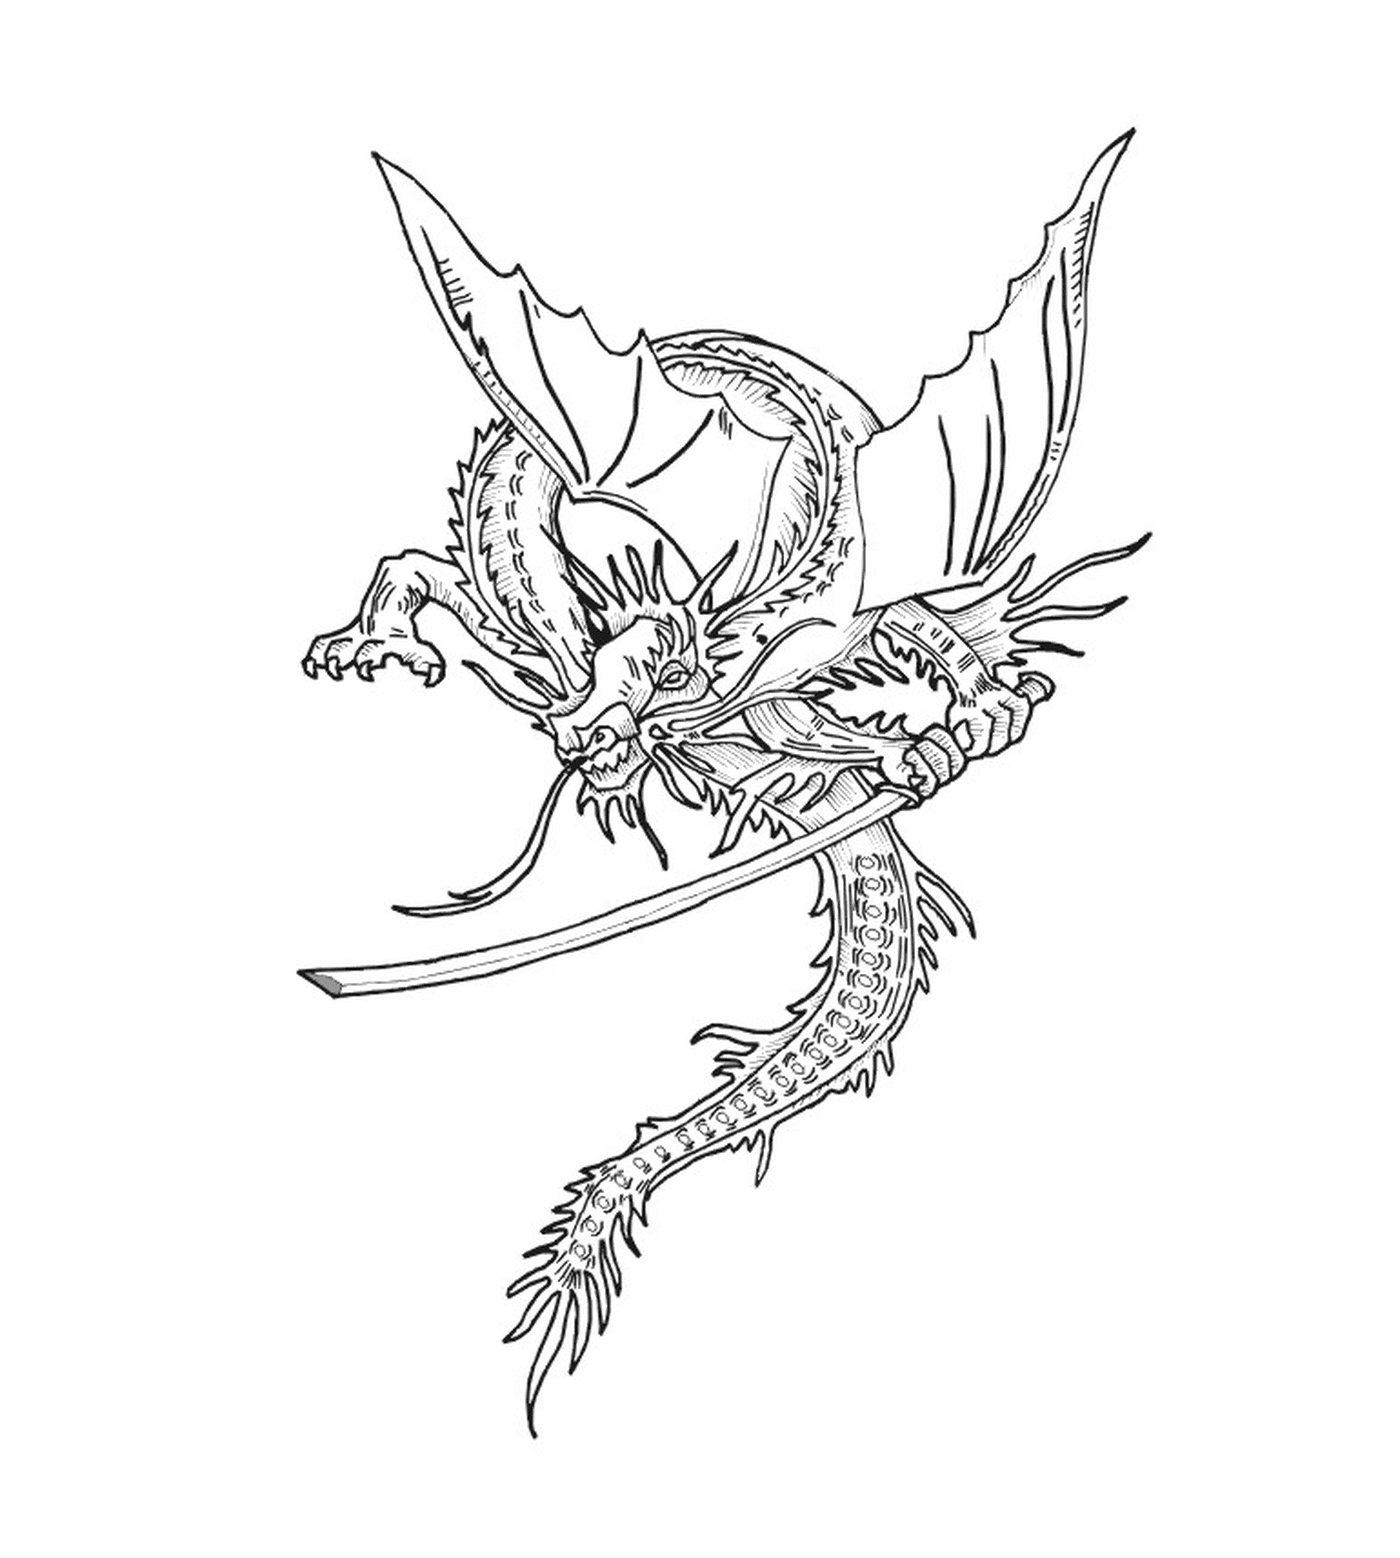  Un dragón con una espada 